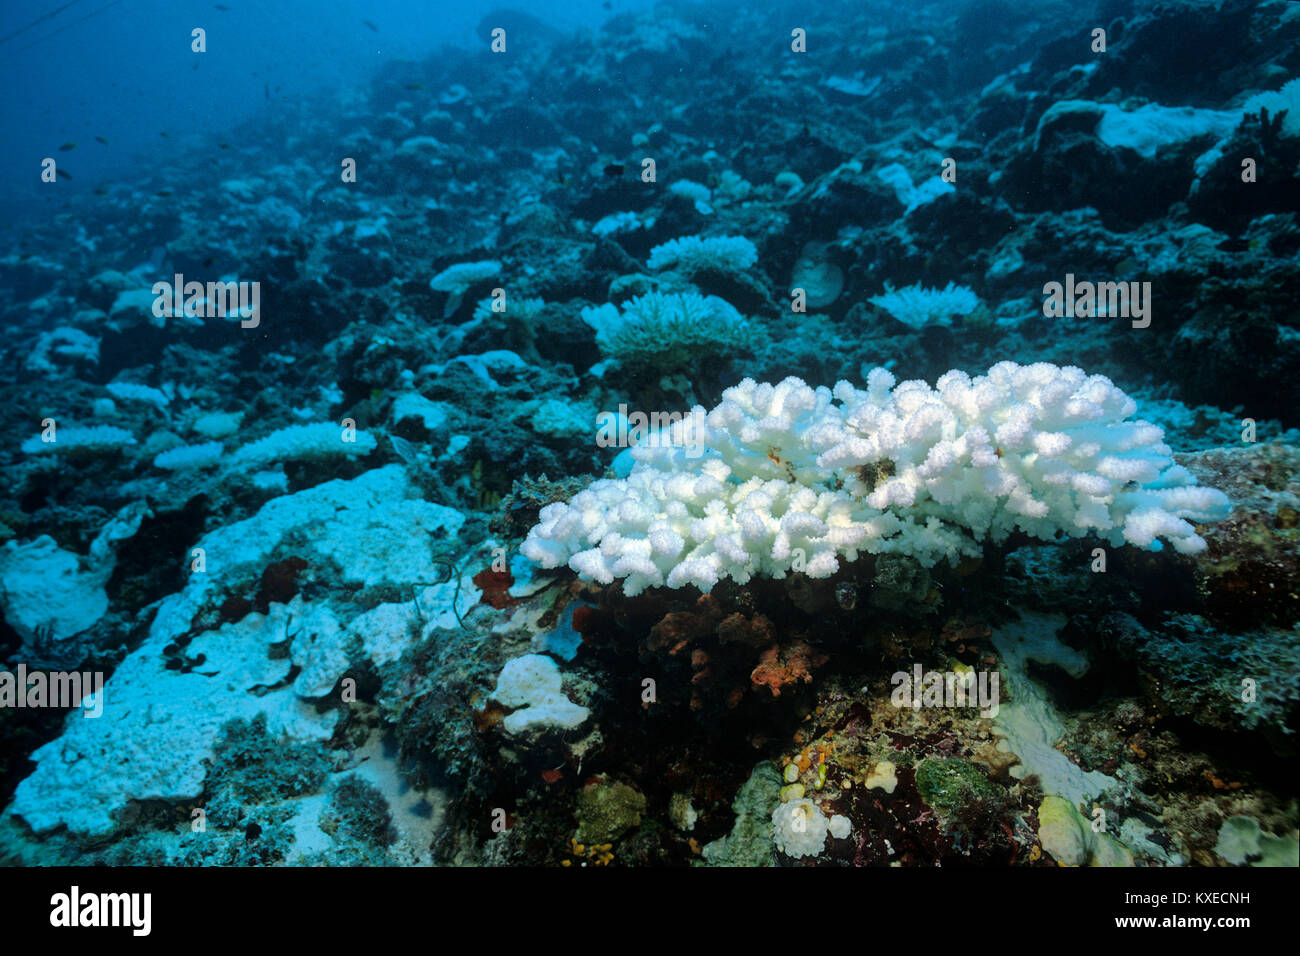 Gebleicht Steinkoralle, Korallenbleiche, Folgen der globalen Erwärmung, Coral Reef auf den Malediven Inseln, Indischer Ozean, Asien Stockfoto